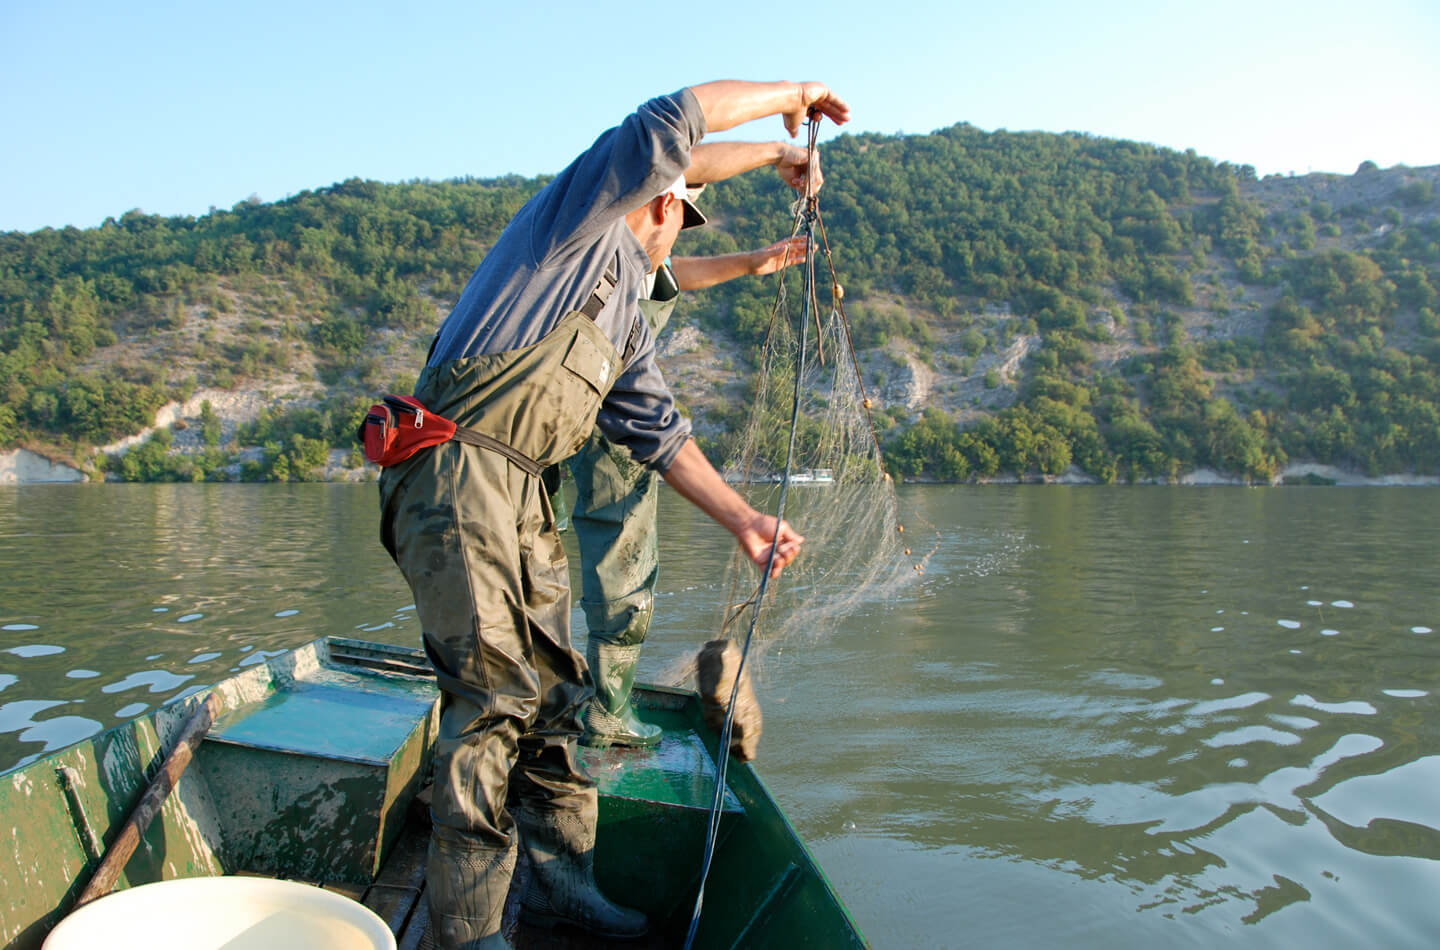 Годишња дозвола за рекреативни риболов у Националном парку „Ђердап“  у 2023. години шест хиљада динара, цена дневне и вишедневне дозволе непромењена